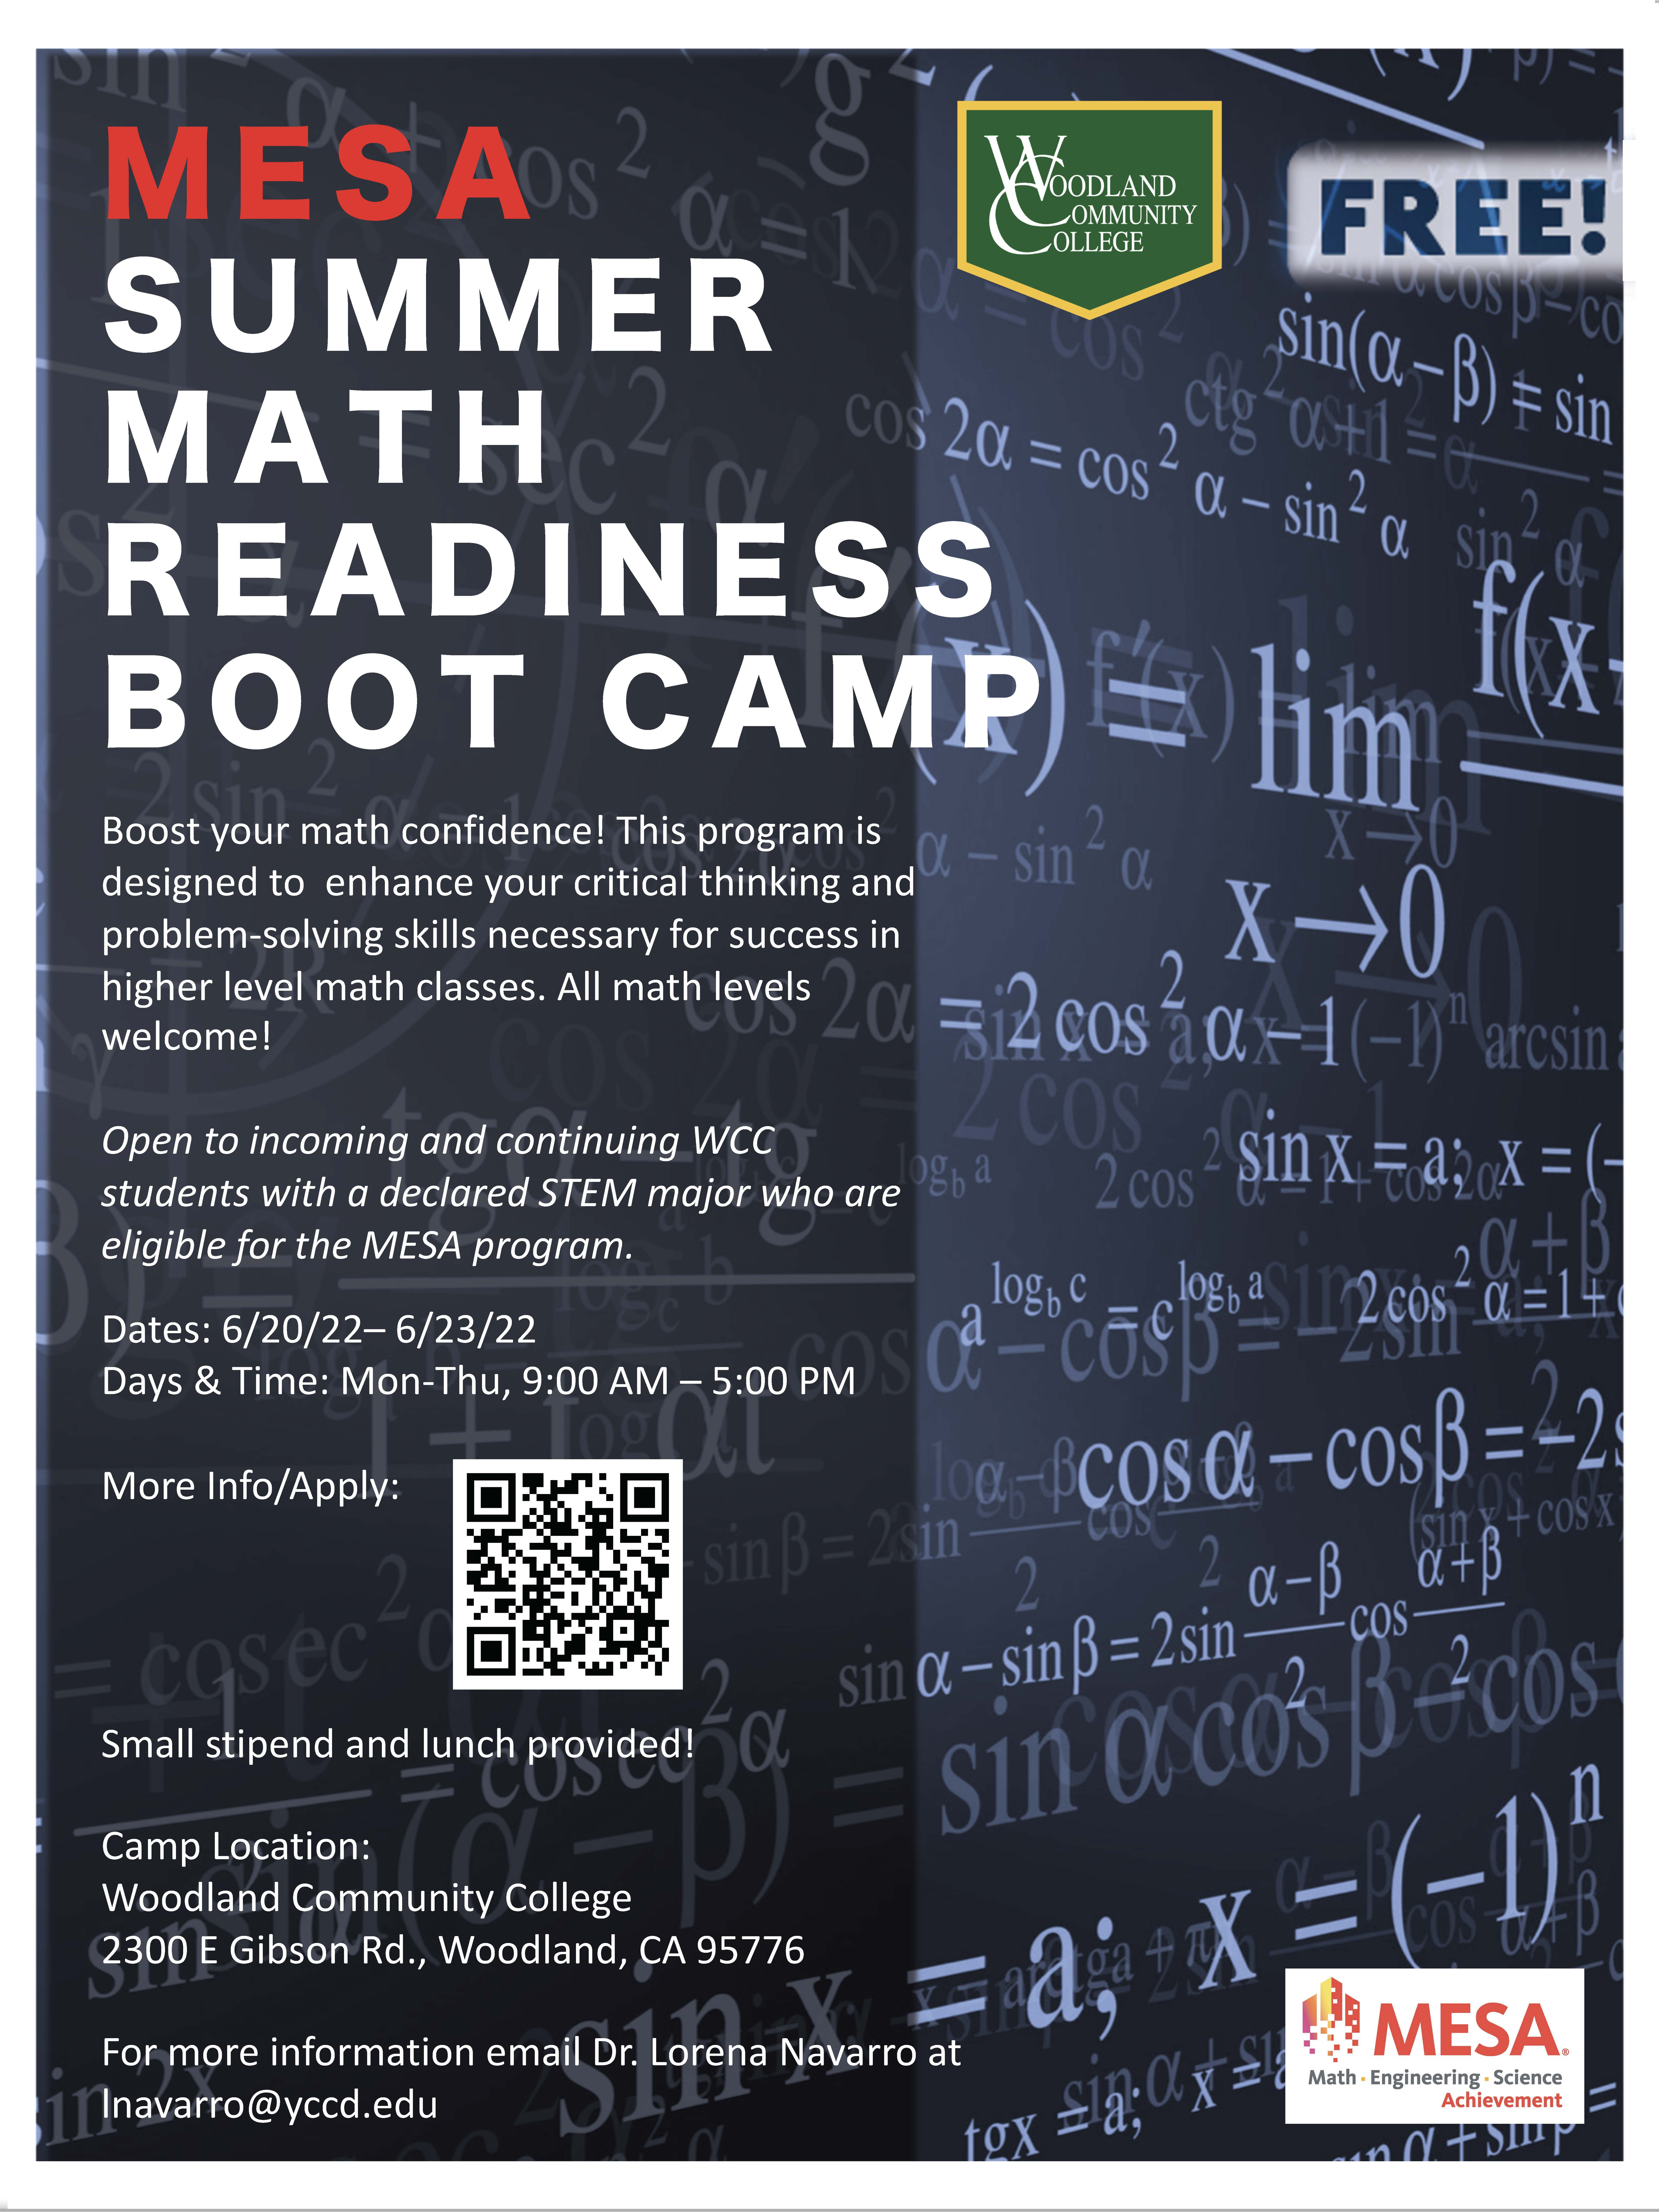 MESA Summer Math Readiness Boot Camp Flyer